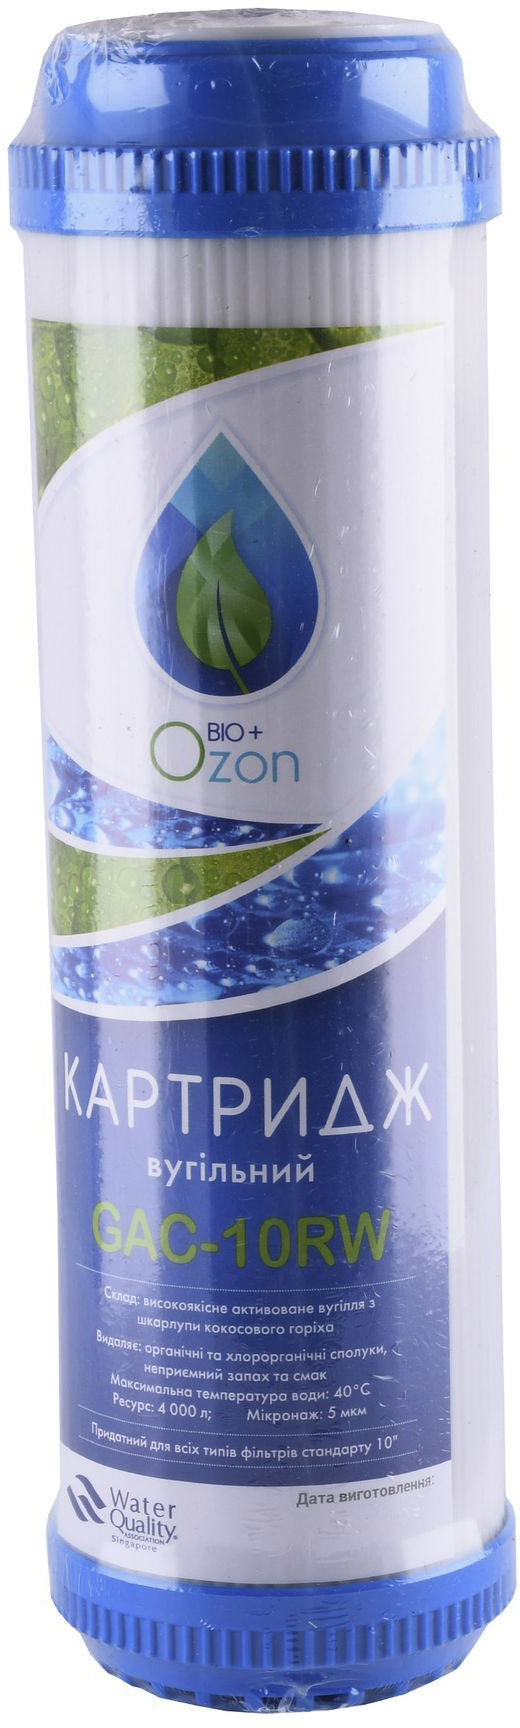 Картриджі для фільтрів Ozon Bio+